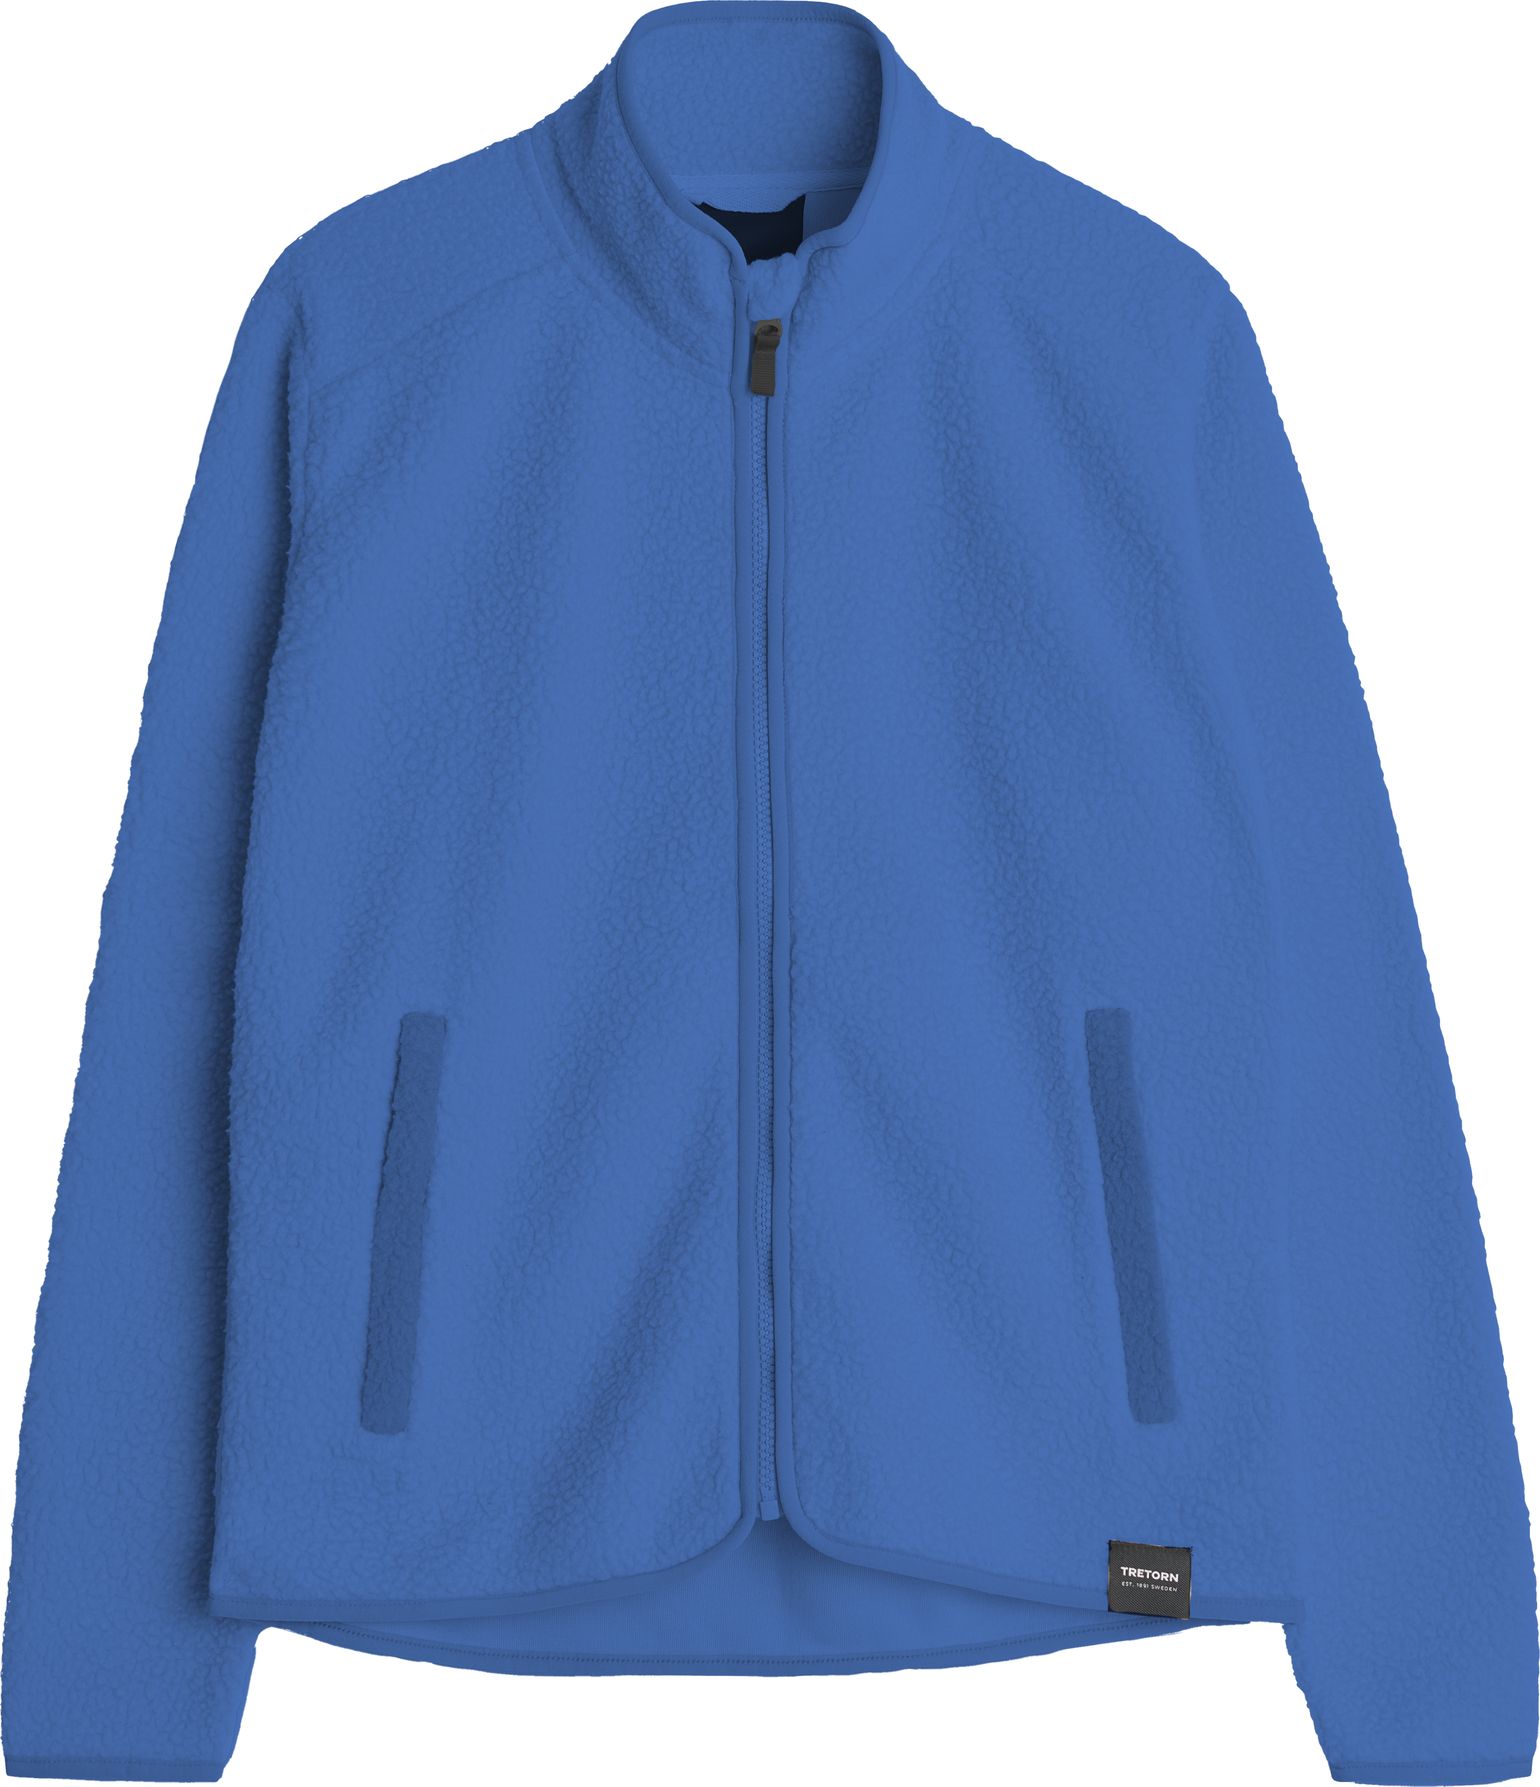 Tretorn Men's Farhult Pile Jacket Palace Blue